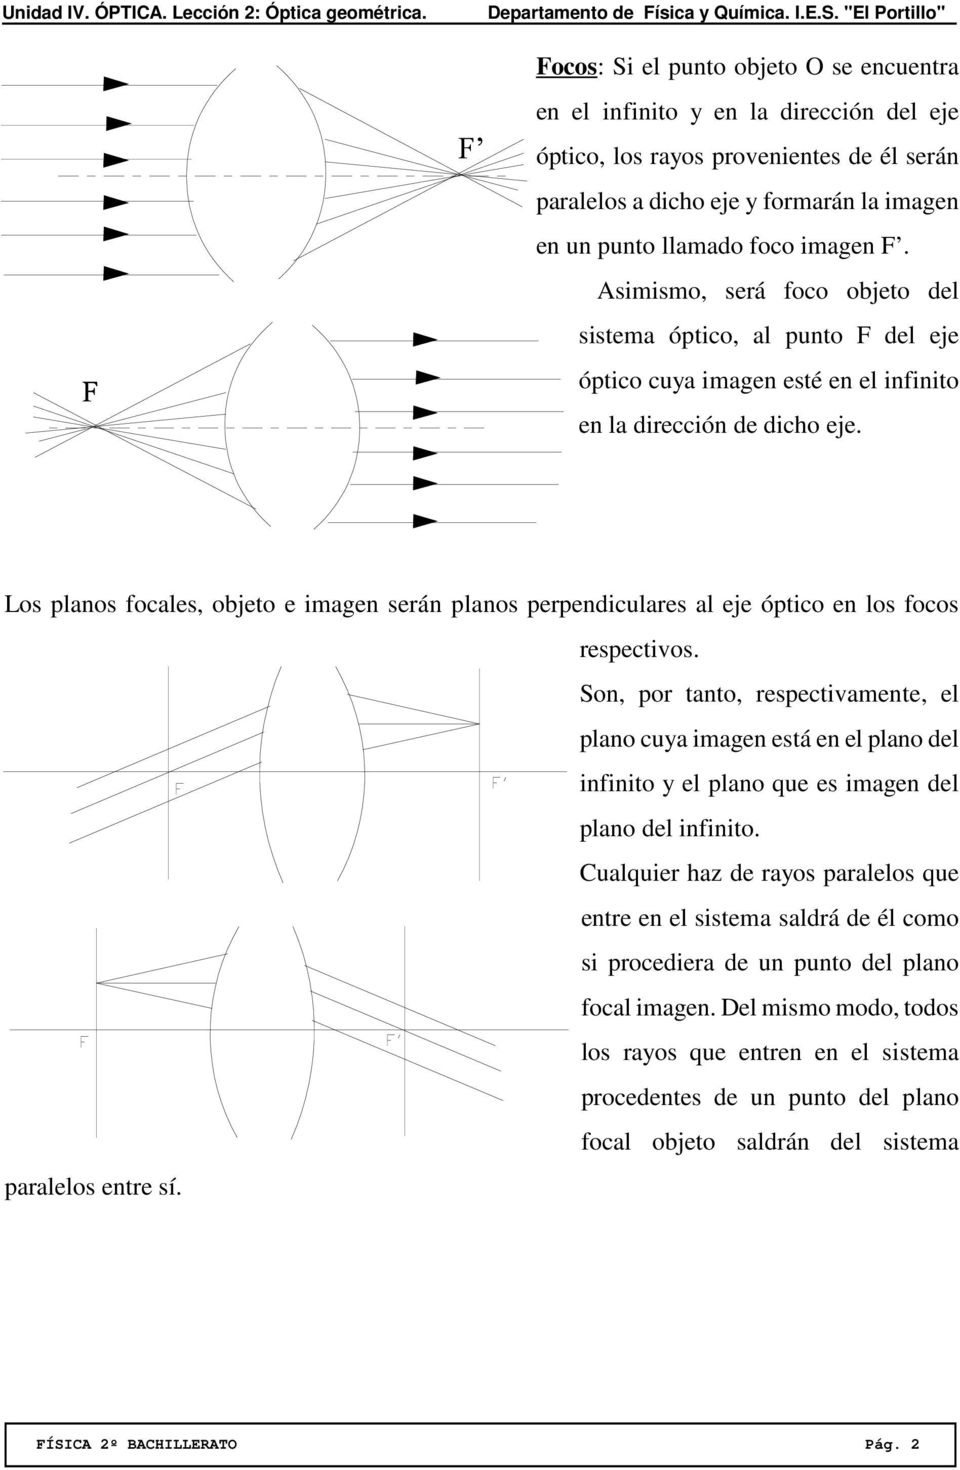 Los planos focales, objeto e imagen serán planos perpendiculares al eje óptico en los focos respectivos.